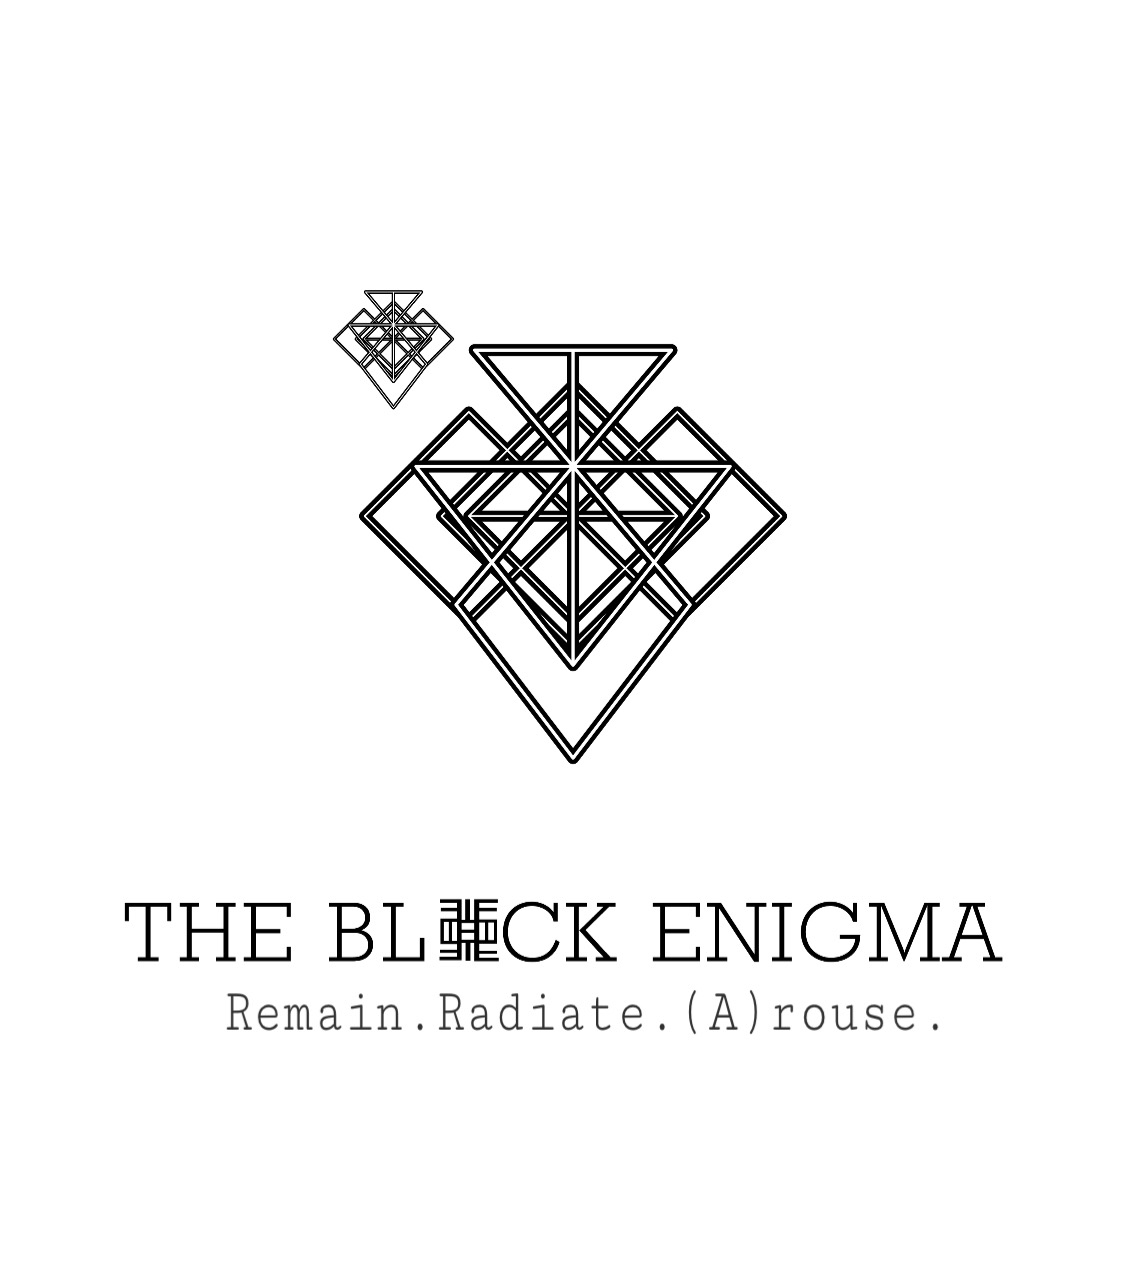 The Black Enigma